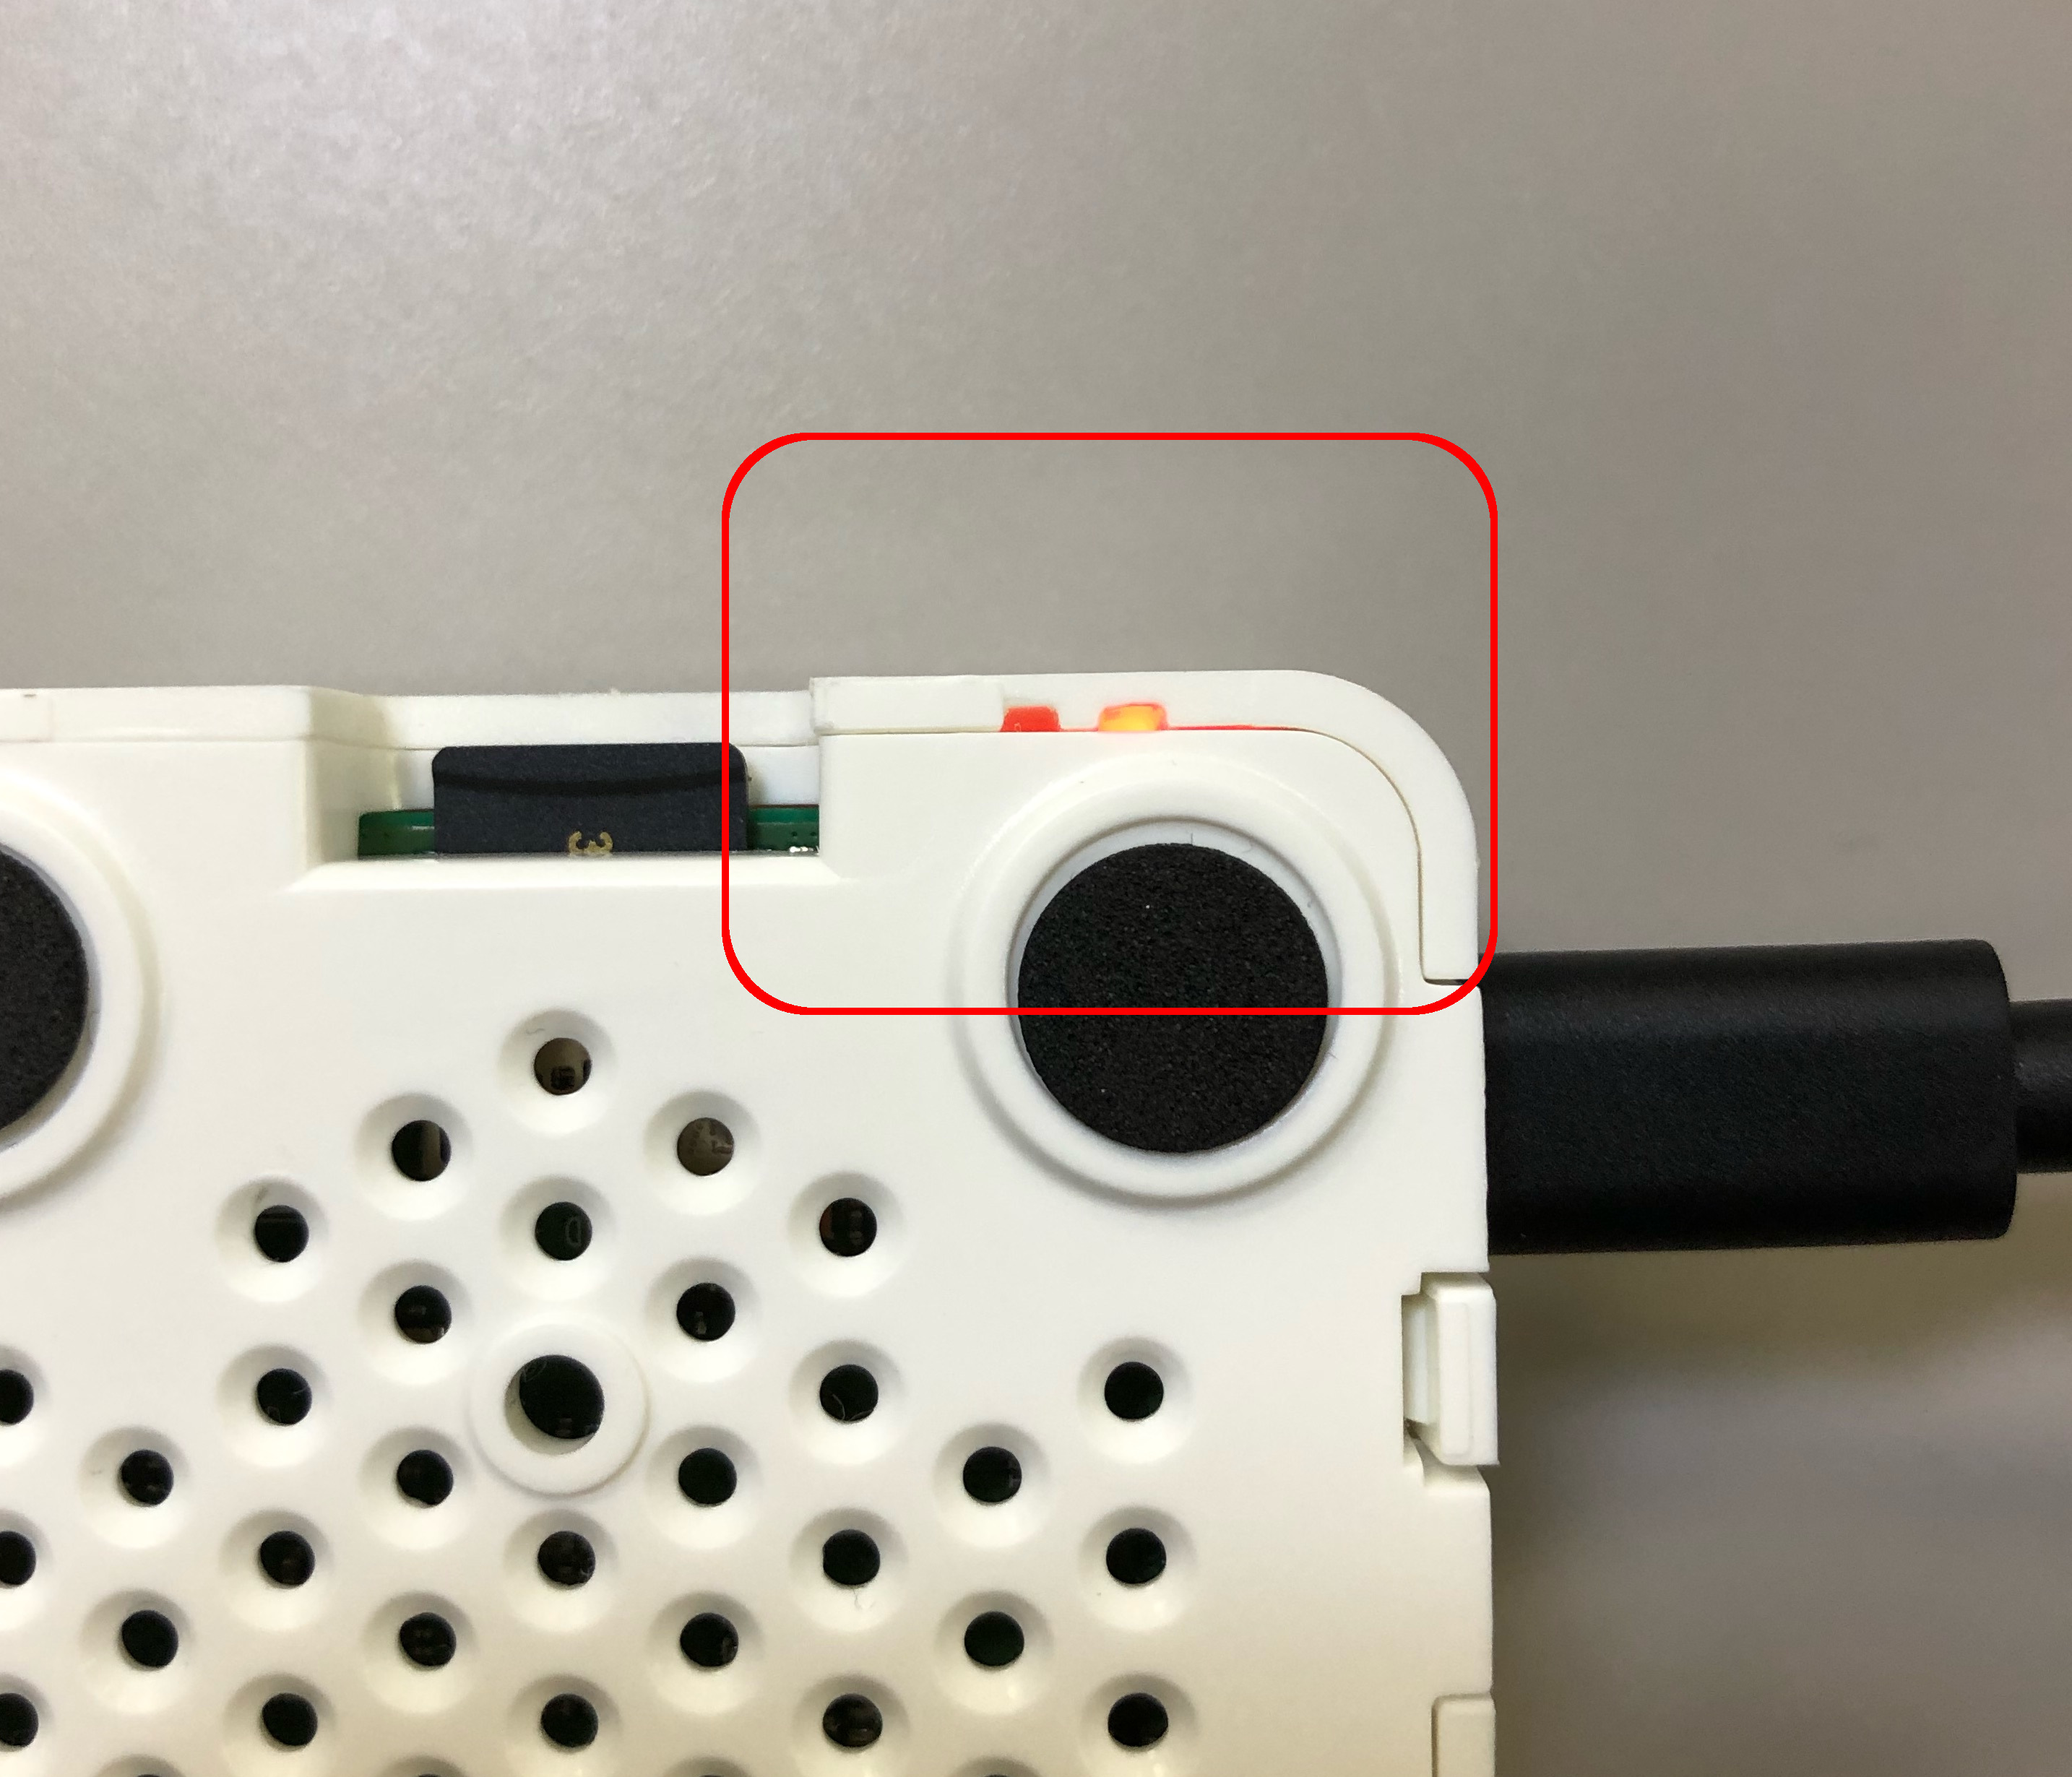 GearBoxのインジケーターの緑色のランプが明滅せず、完全に消灯していることを確認する